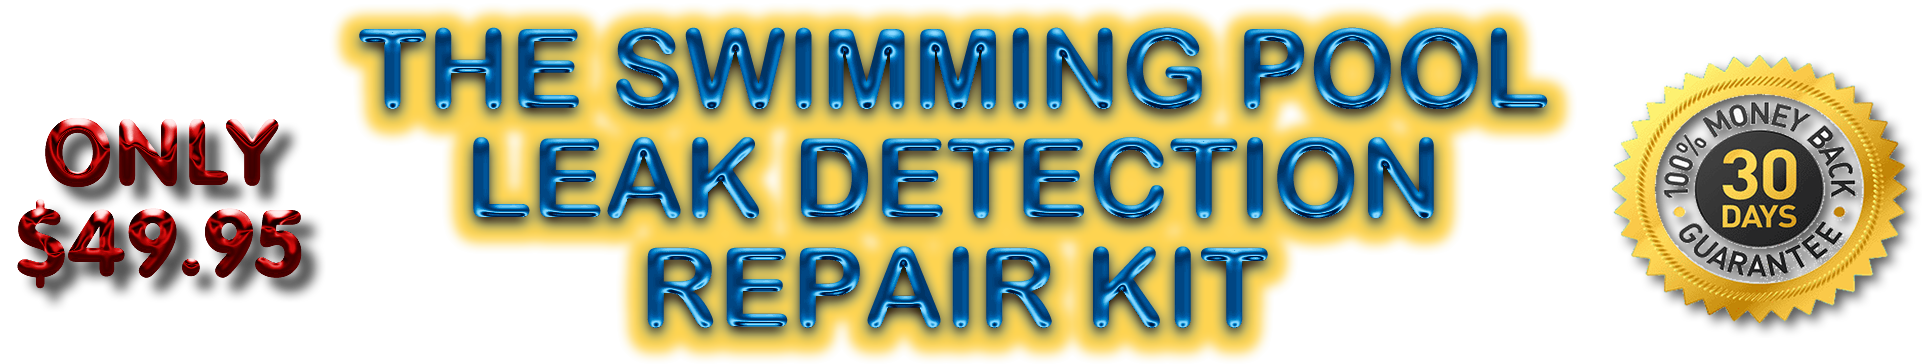 the swimming pool leak detection repair kit